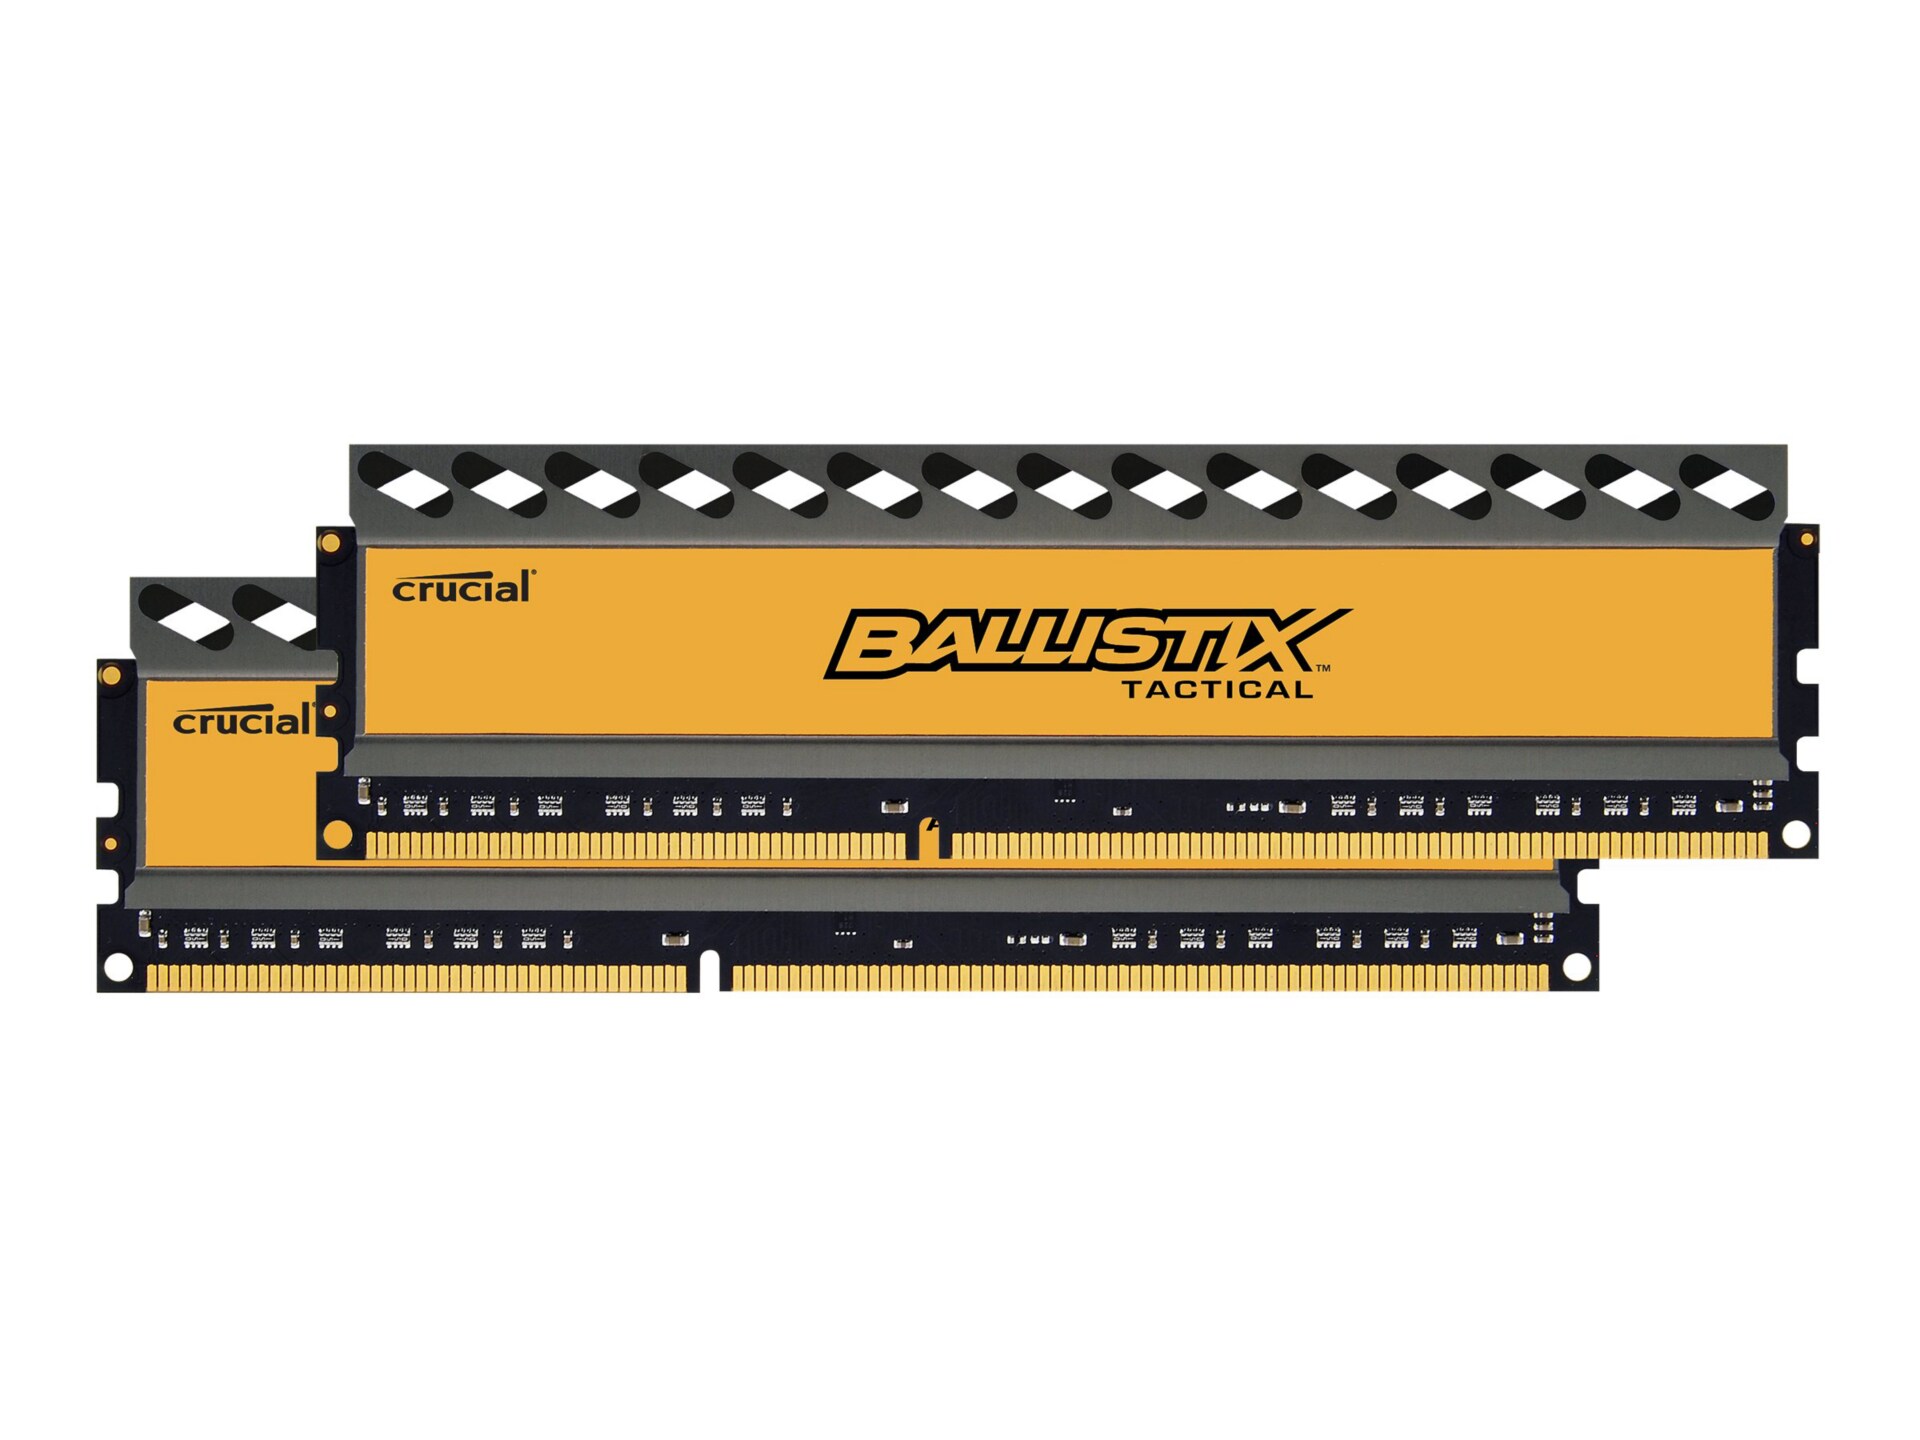 Ballistix Tactical - DDR3 - 8 GB: 2 x 4 GB - DIMM 240-pin - unbuffered